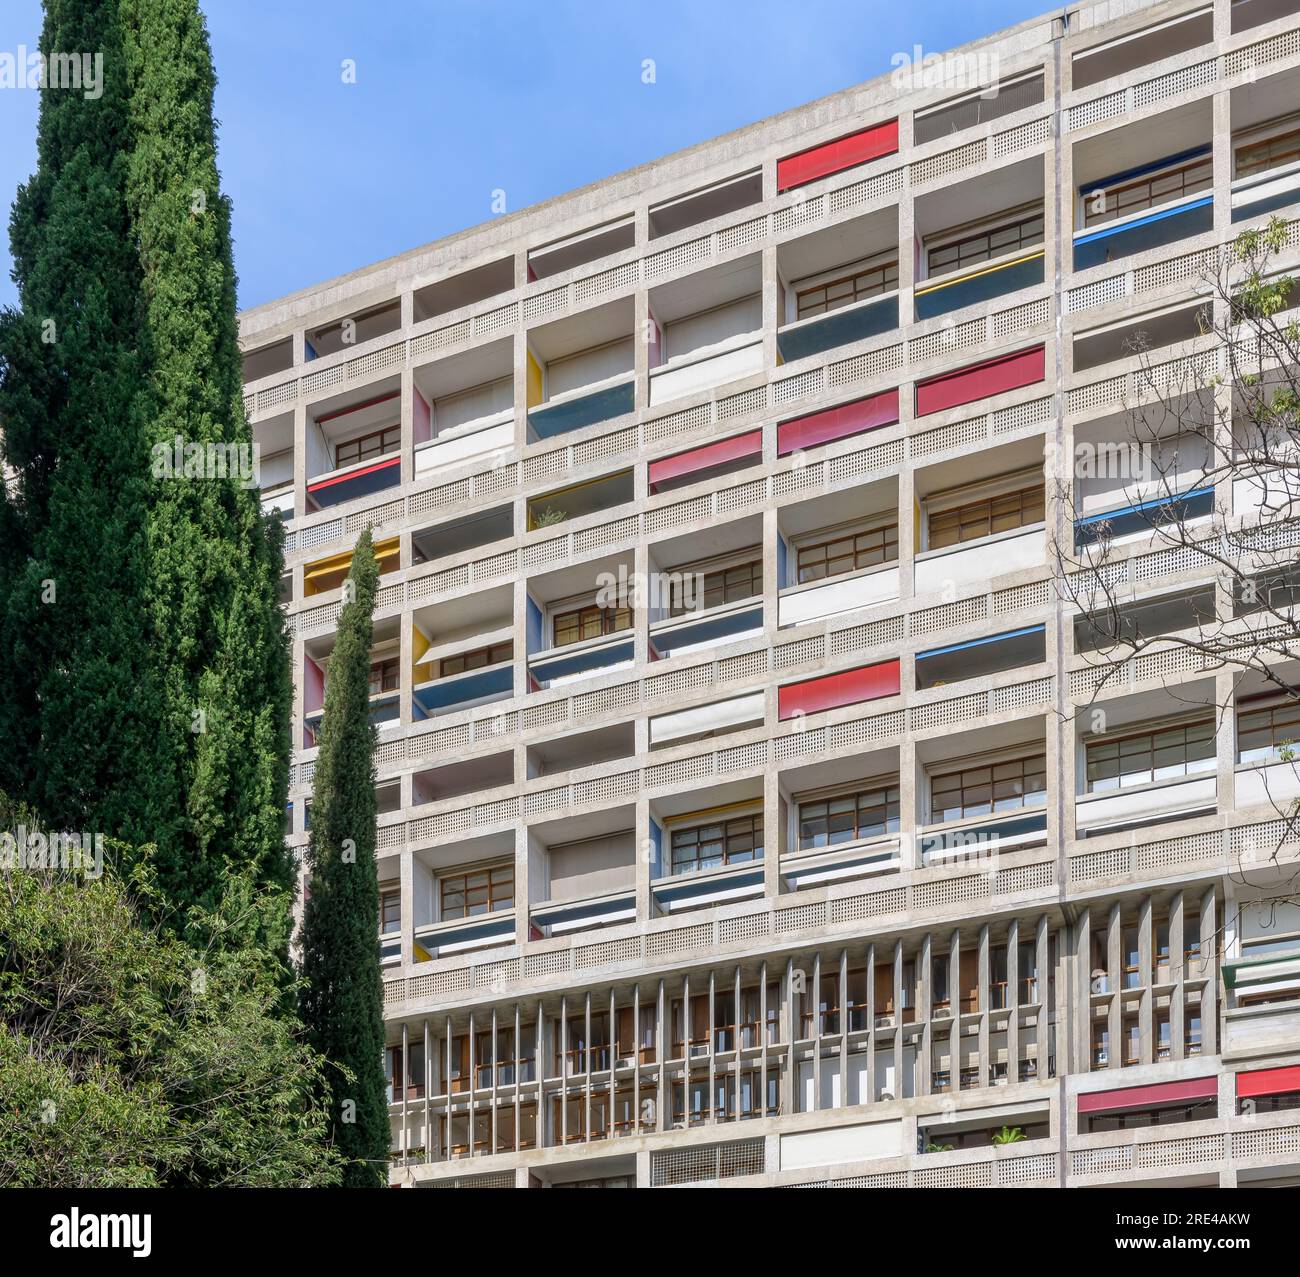 Un bâtiment classique du 20e siècle. Unité d'habitation de le Corbusier à Marseille. Le bâtiment est également connu sous le nom de Cité radieuse le Corbusier. Banque D'Images